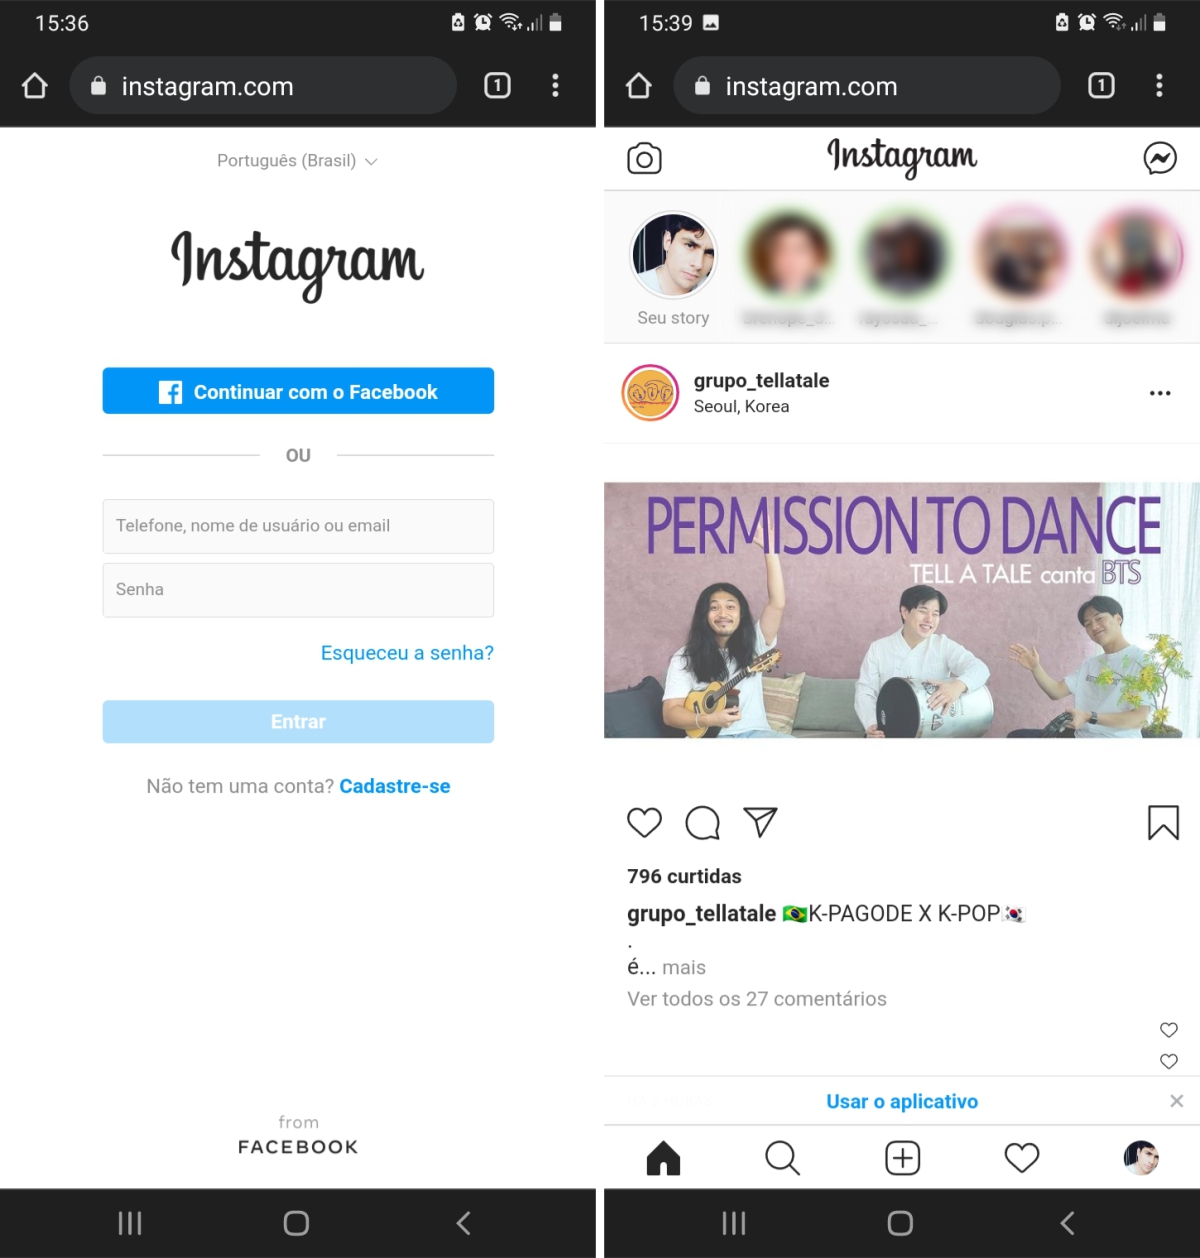 Instagram de navegador do celular - Como entrar no Instagram usando PC ou Smartphones